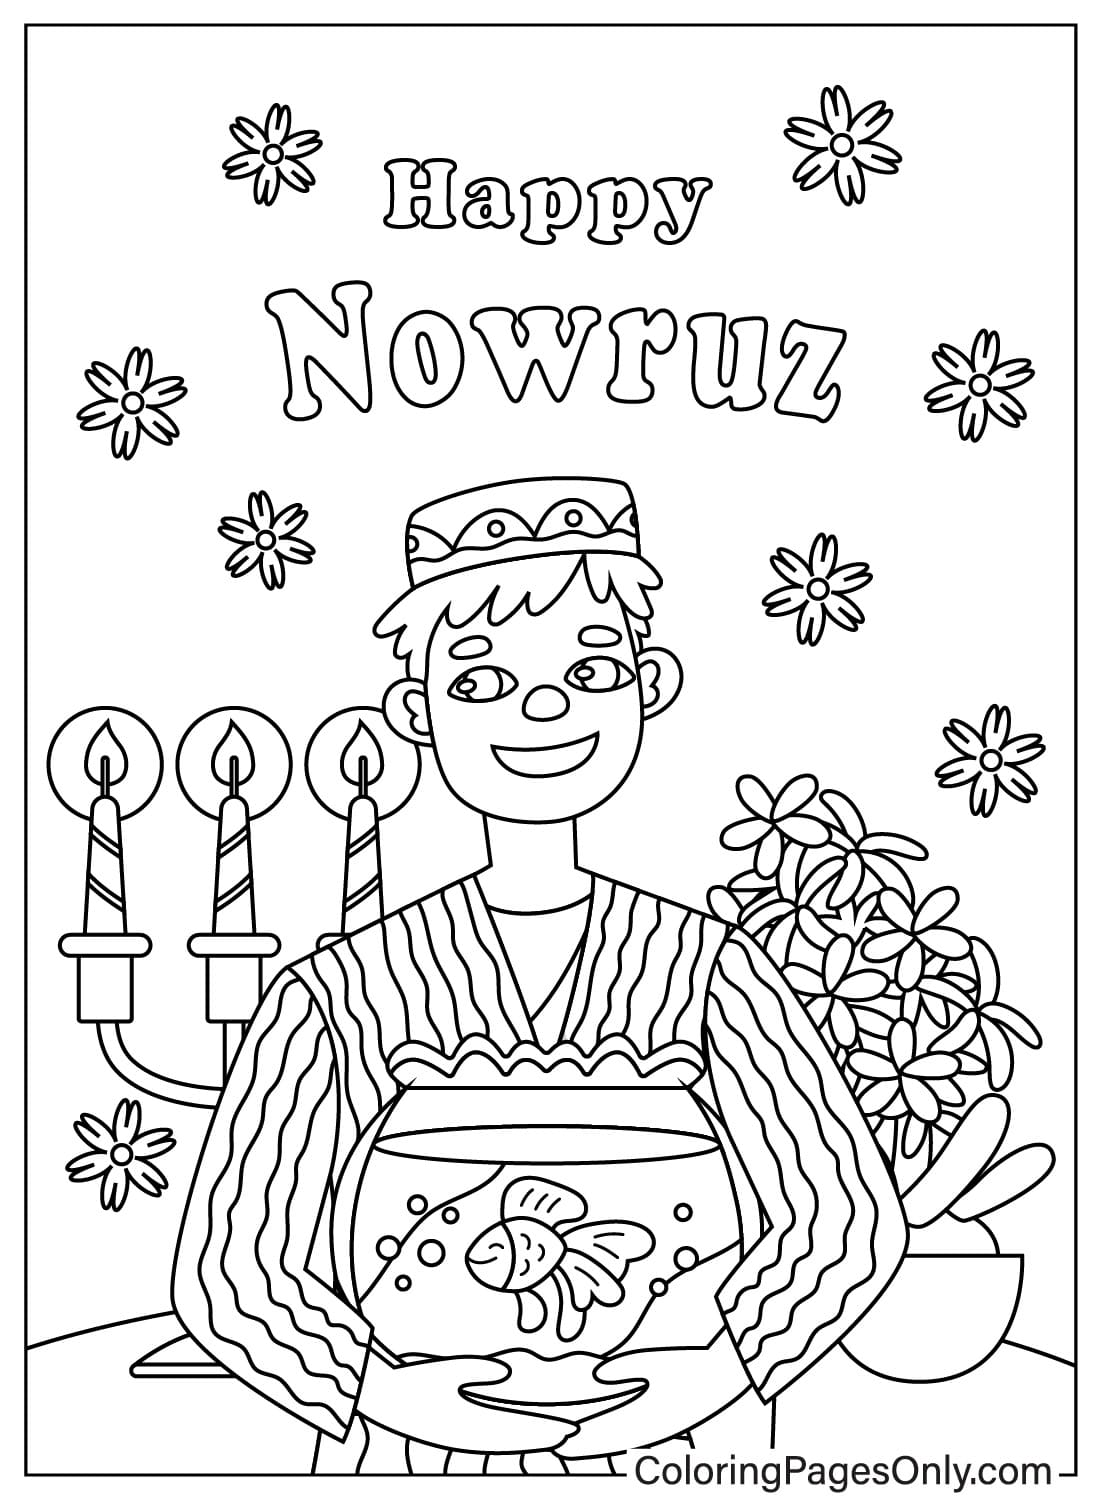 Bilder zum Ausmalen zum Internationalen Nowruz-Tag vom Internationalen Nowruz-Tag